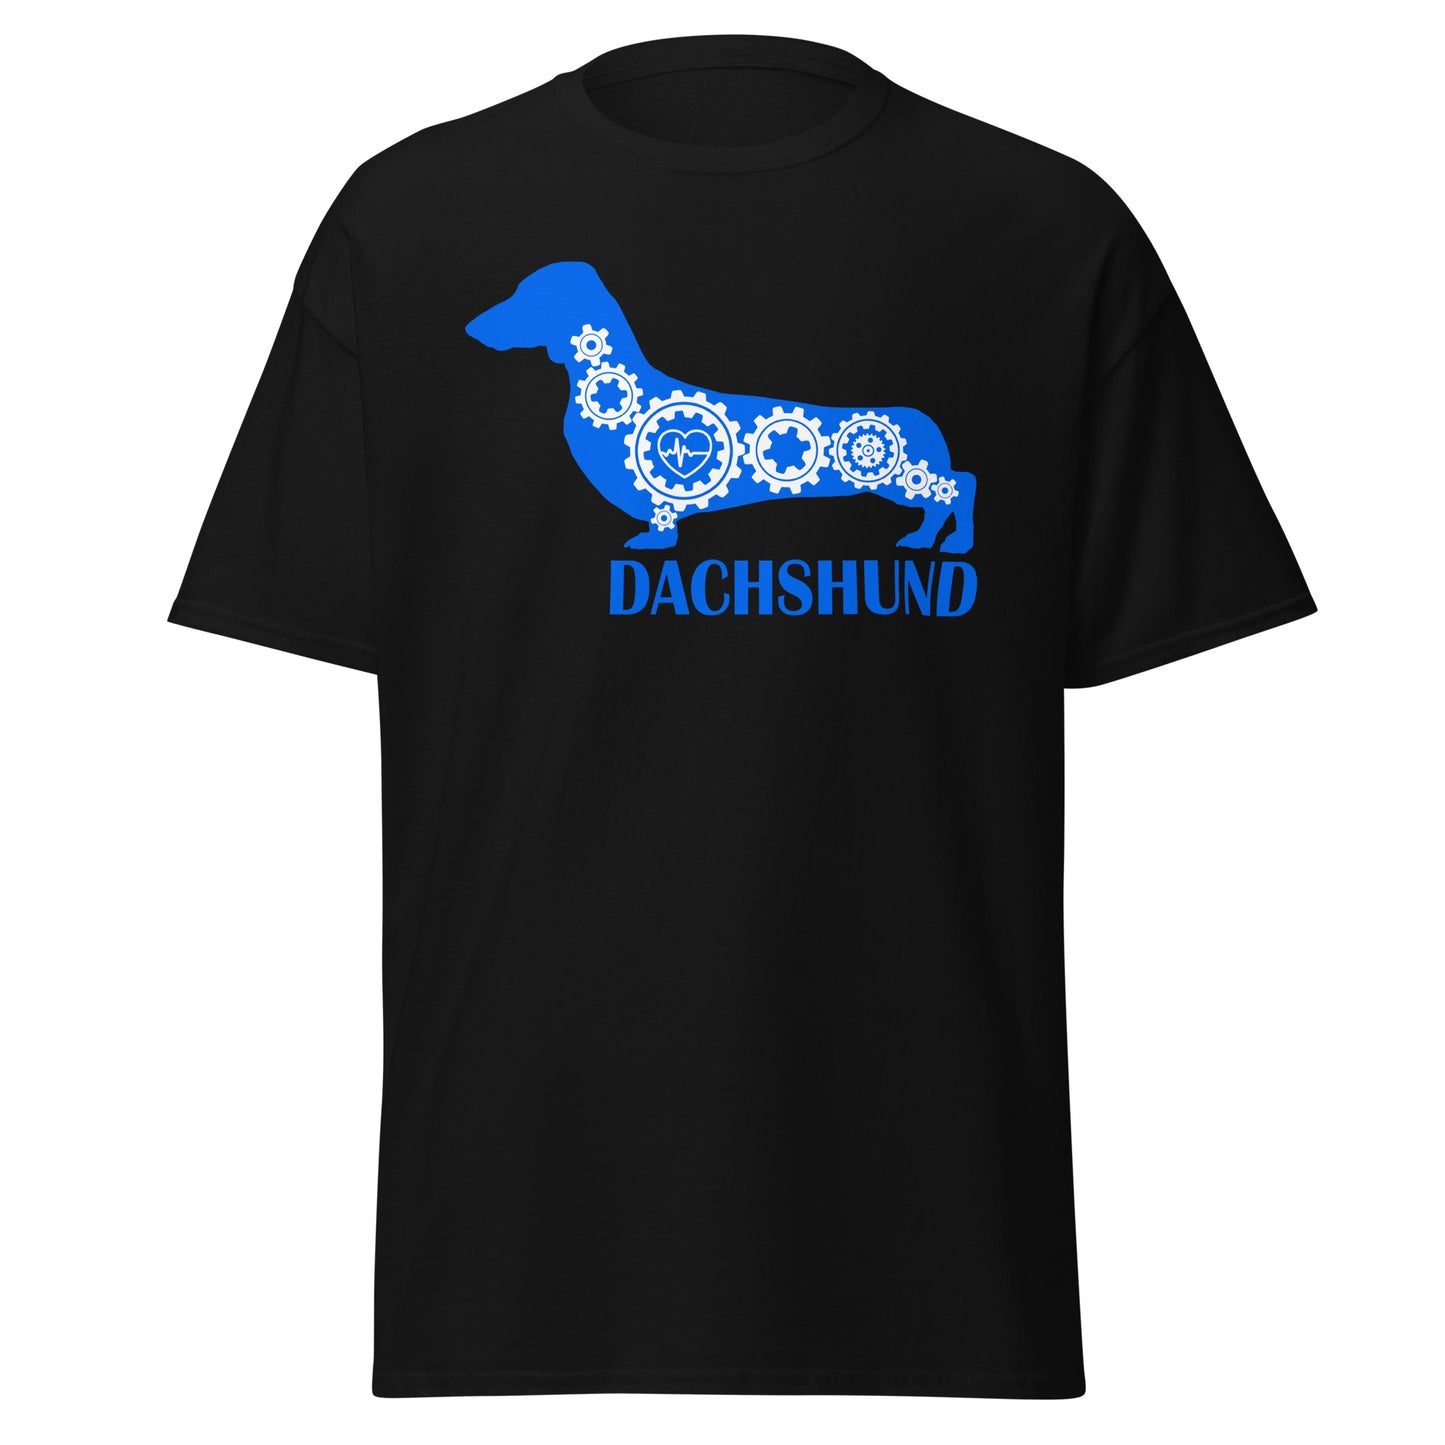 Dachshund Bionic men’s black t-shirt by Dog Artistry.